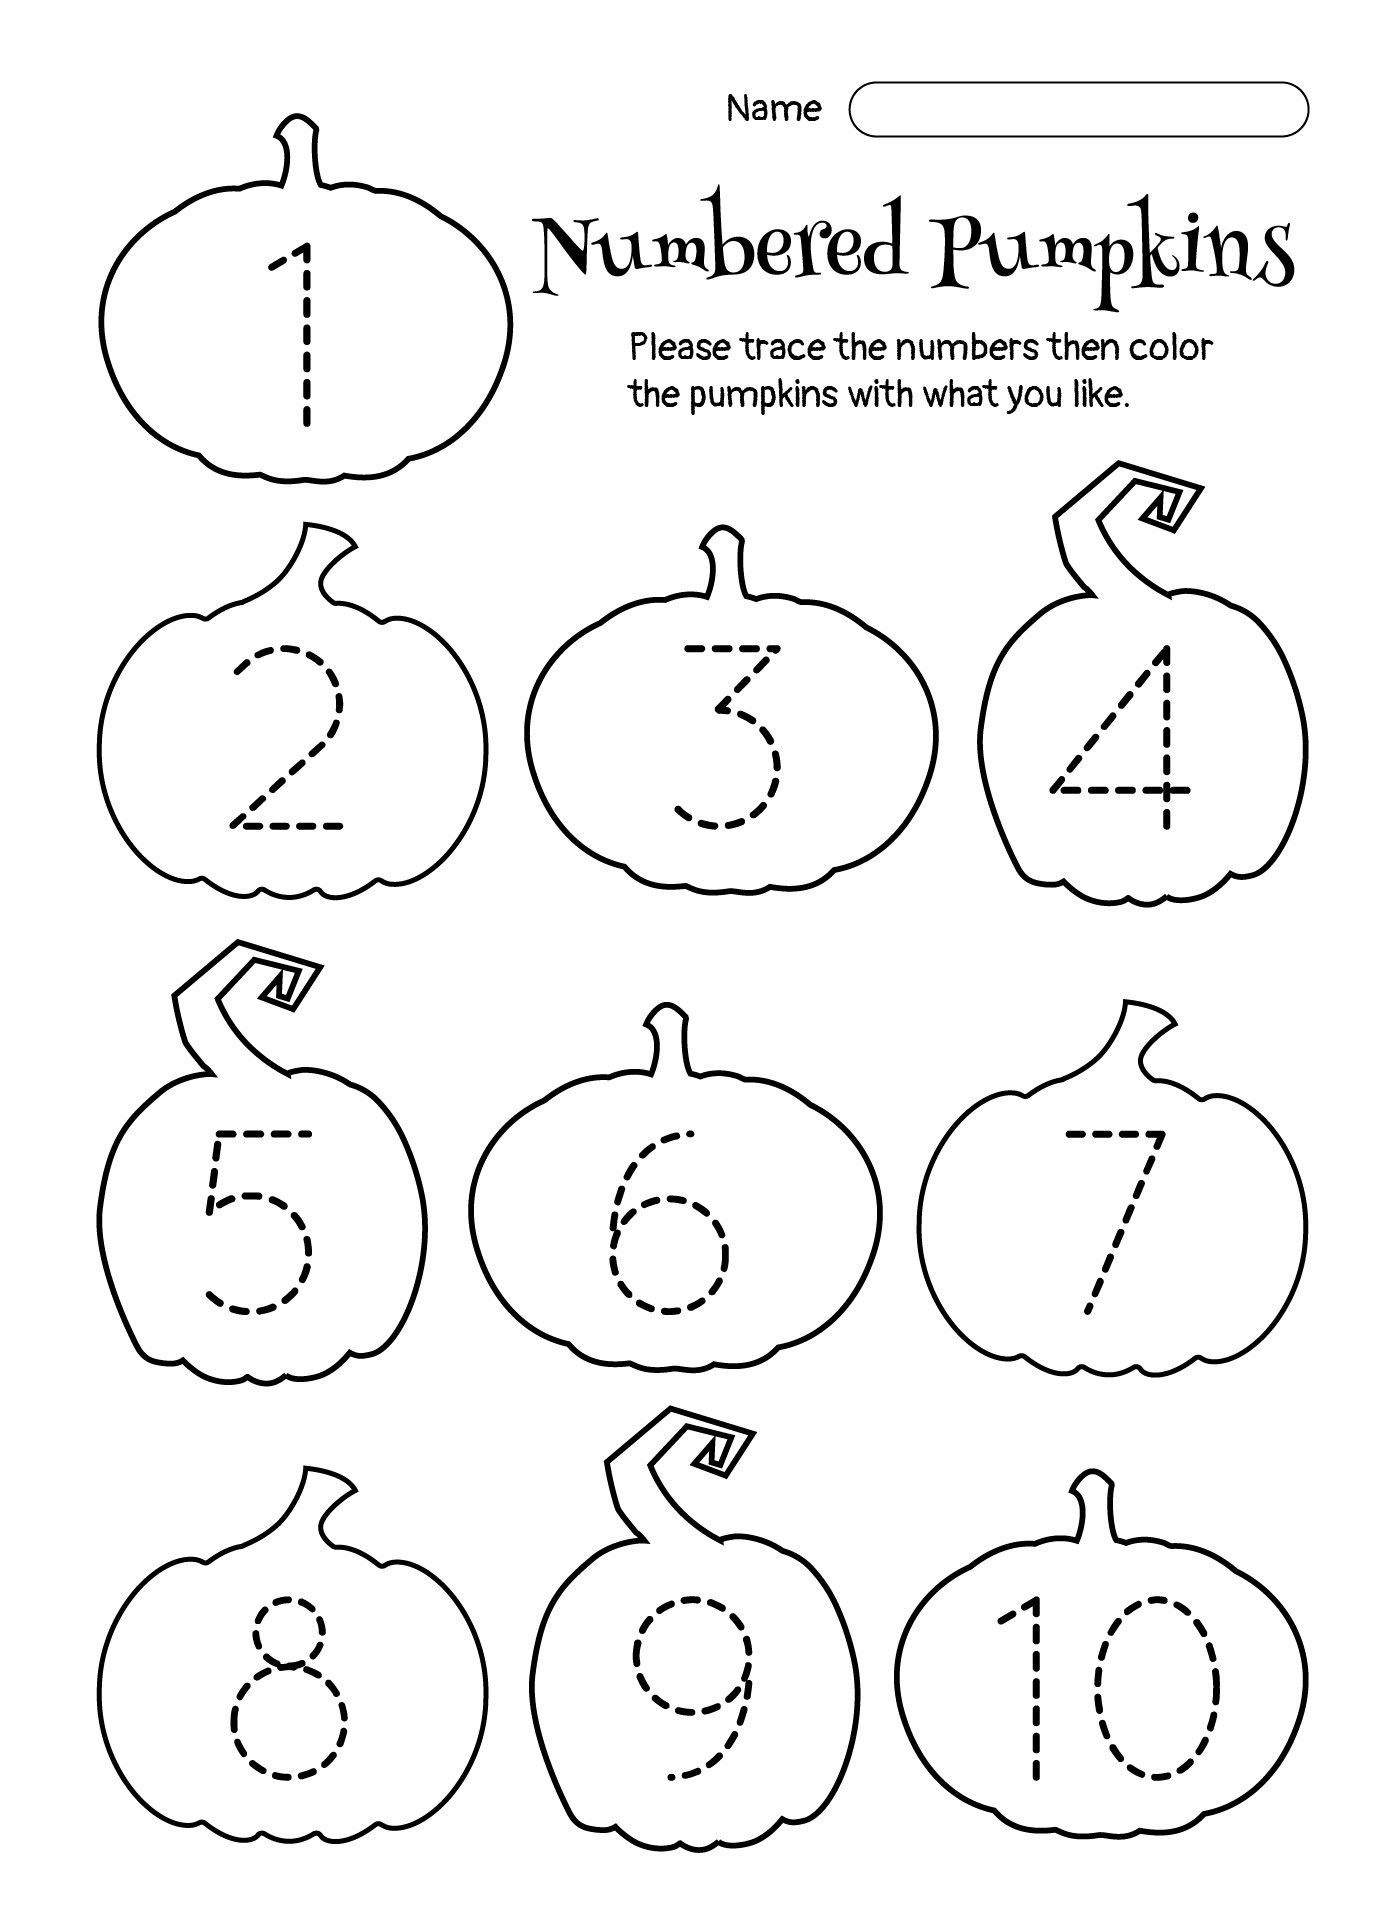 Printable Pumpkins with Numbers